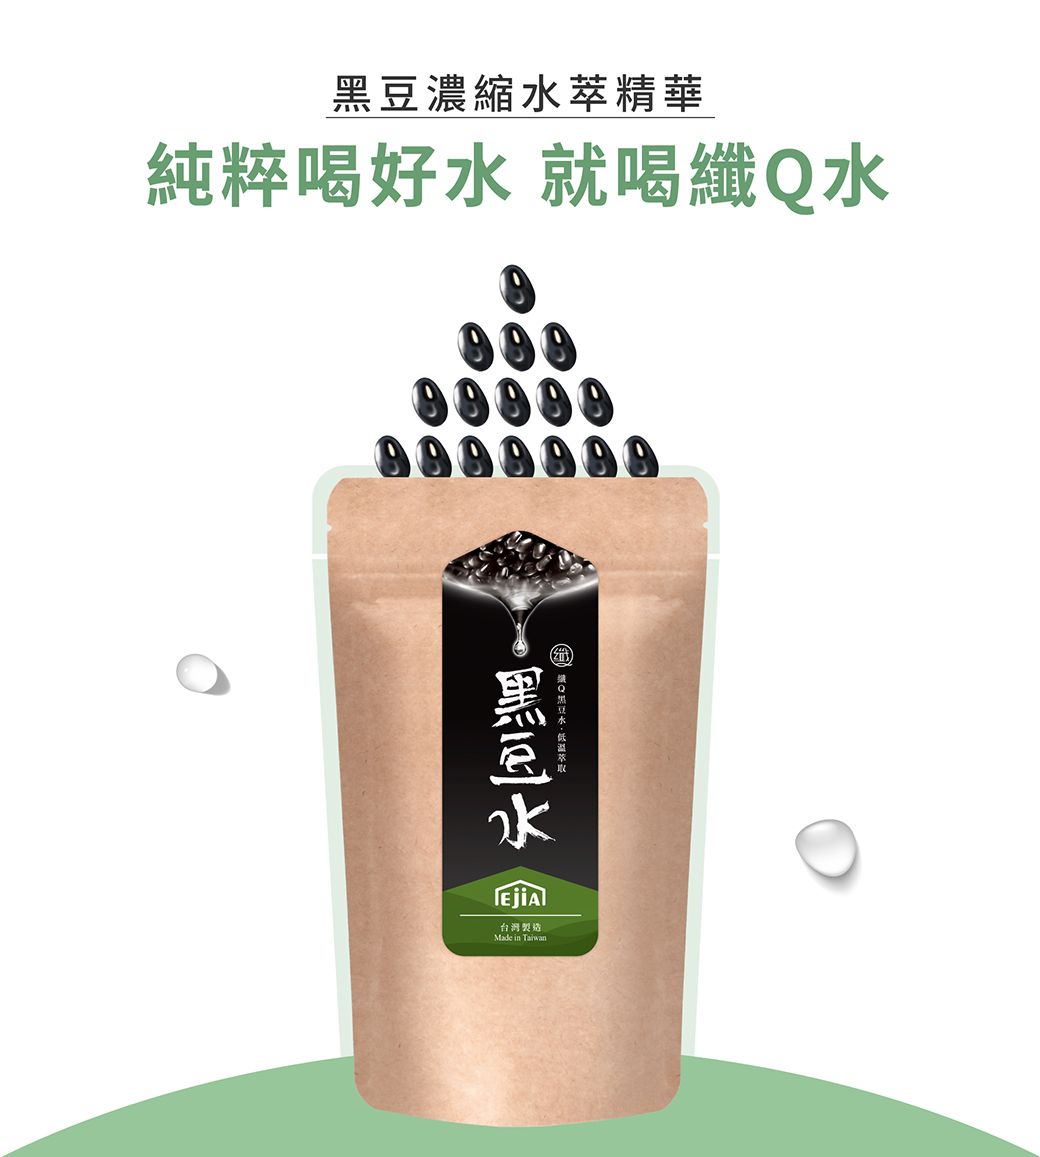 濃縮萃精華純粹喝好 就喝纖水      水 Q黑豆水台灣製造